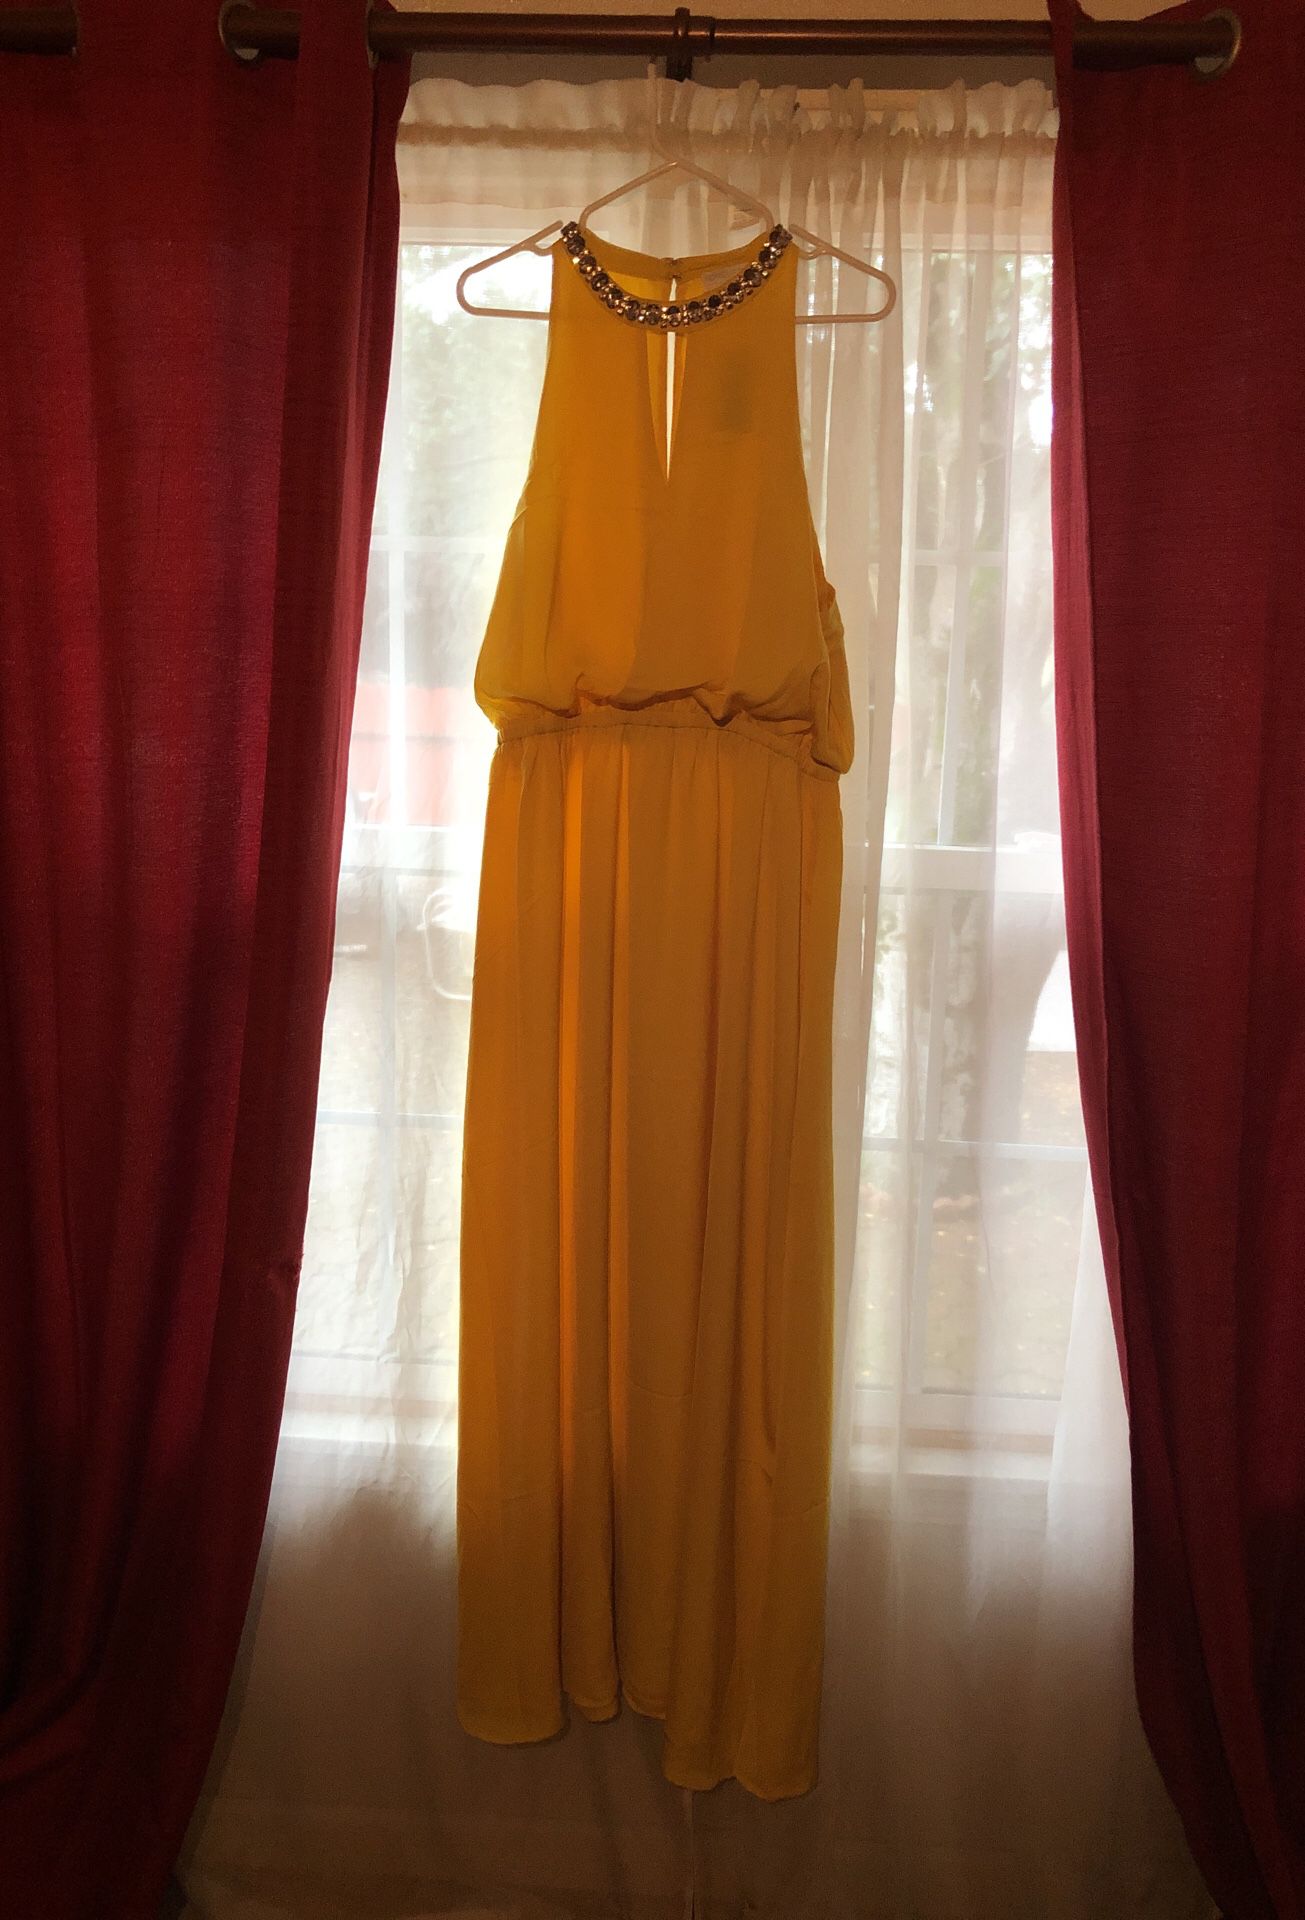 NEW yellow long dress